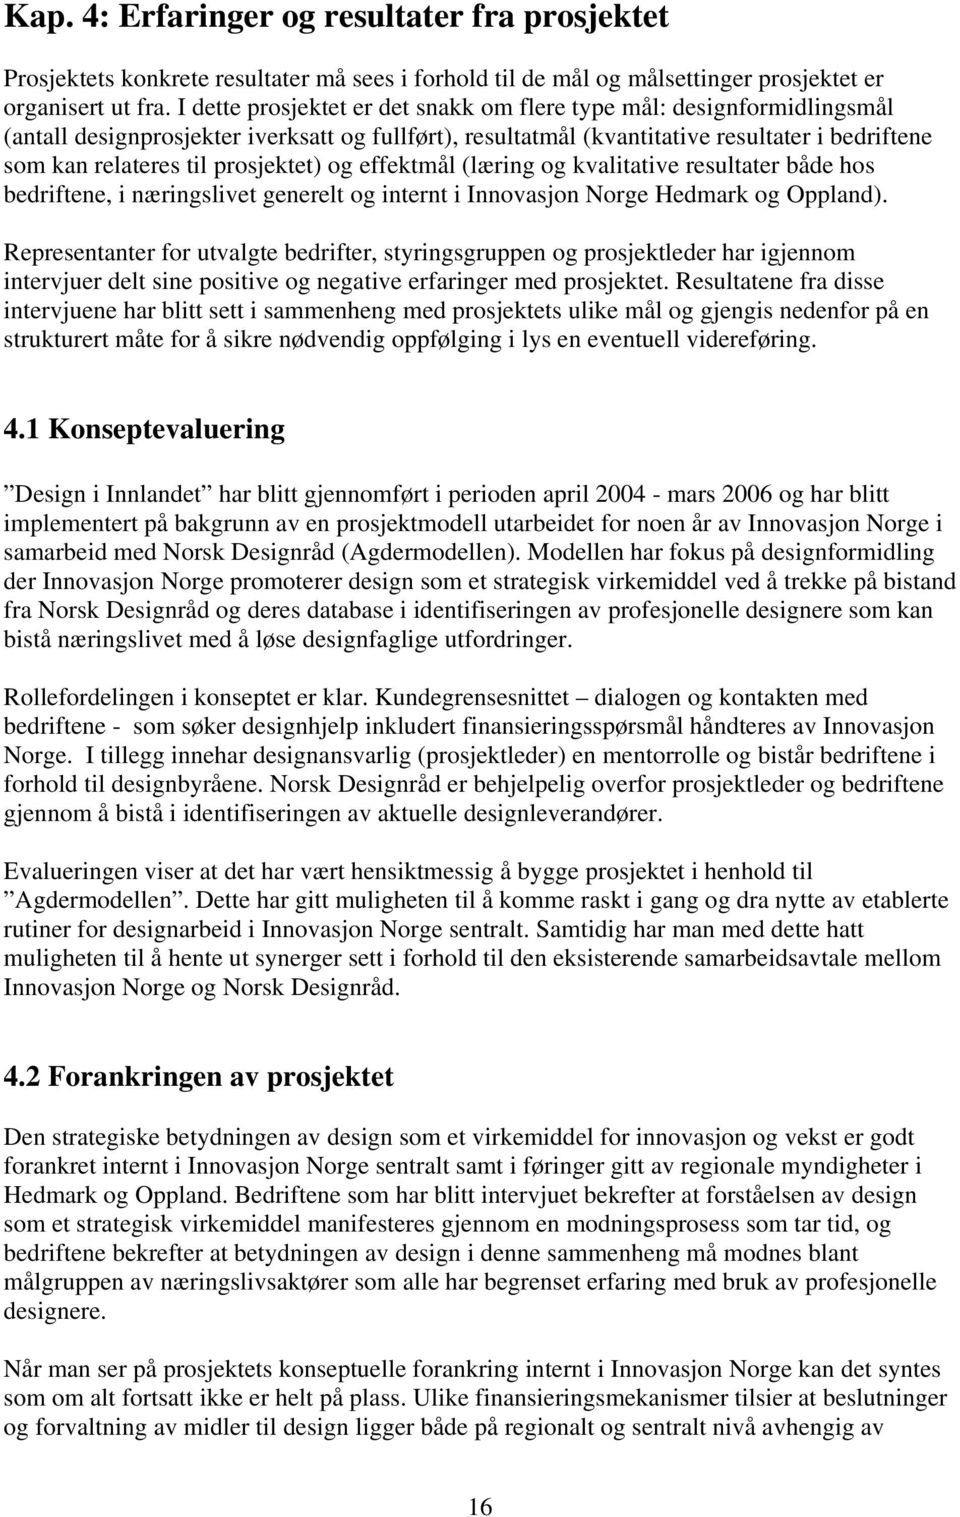 effektmål (læring g kvalitative resultater både hs bedriftene, i næringslivet generelt g internt i Innvasjn Nrge Hedmark g Oppland).